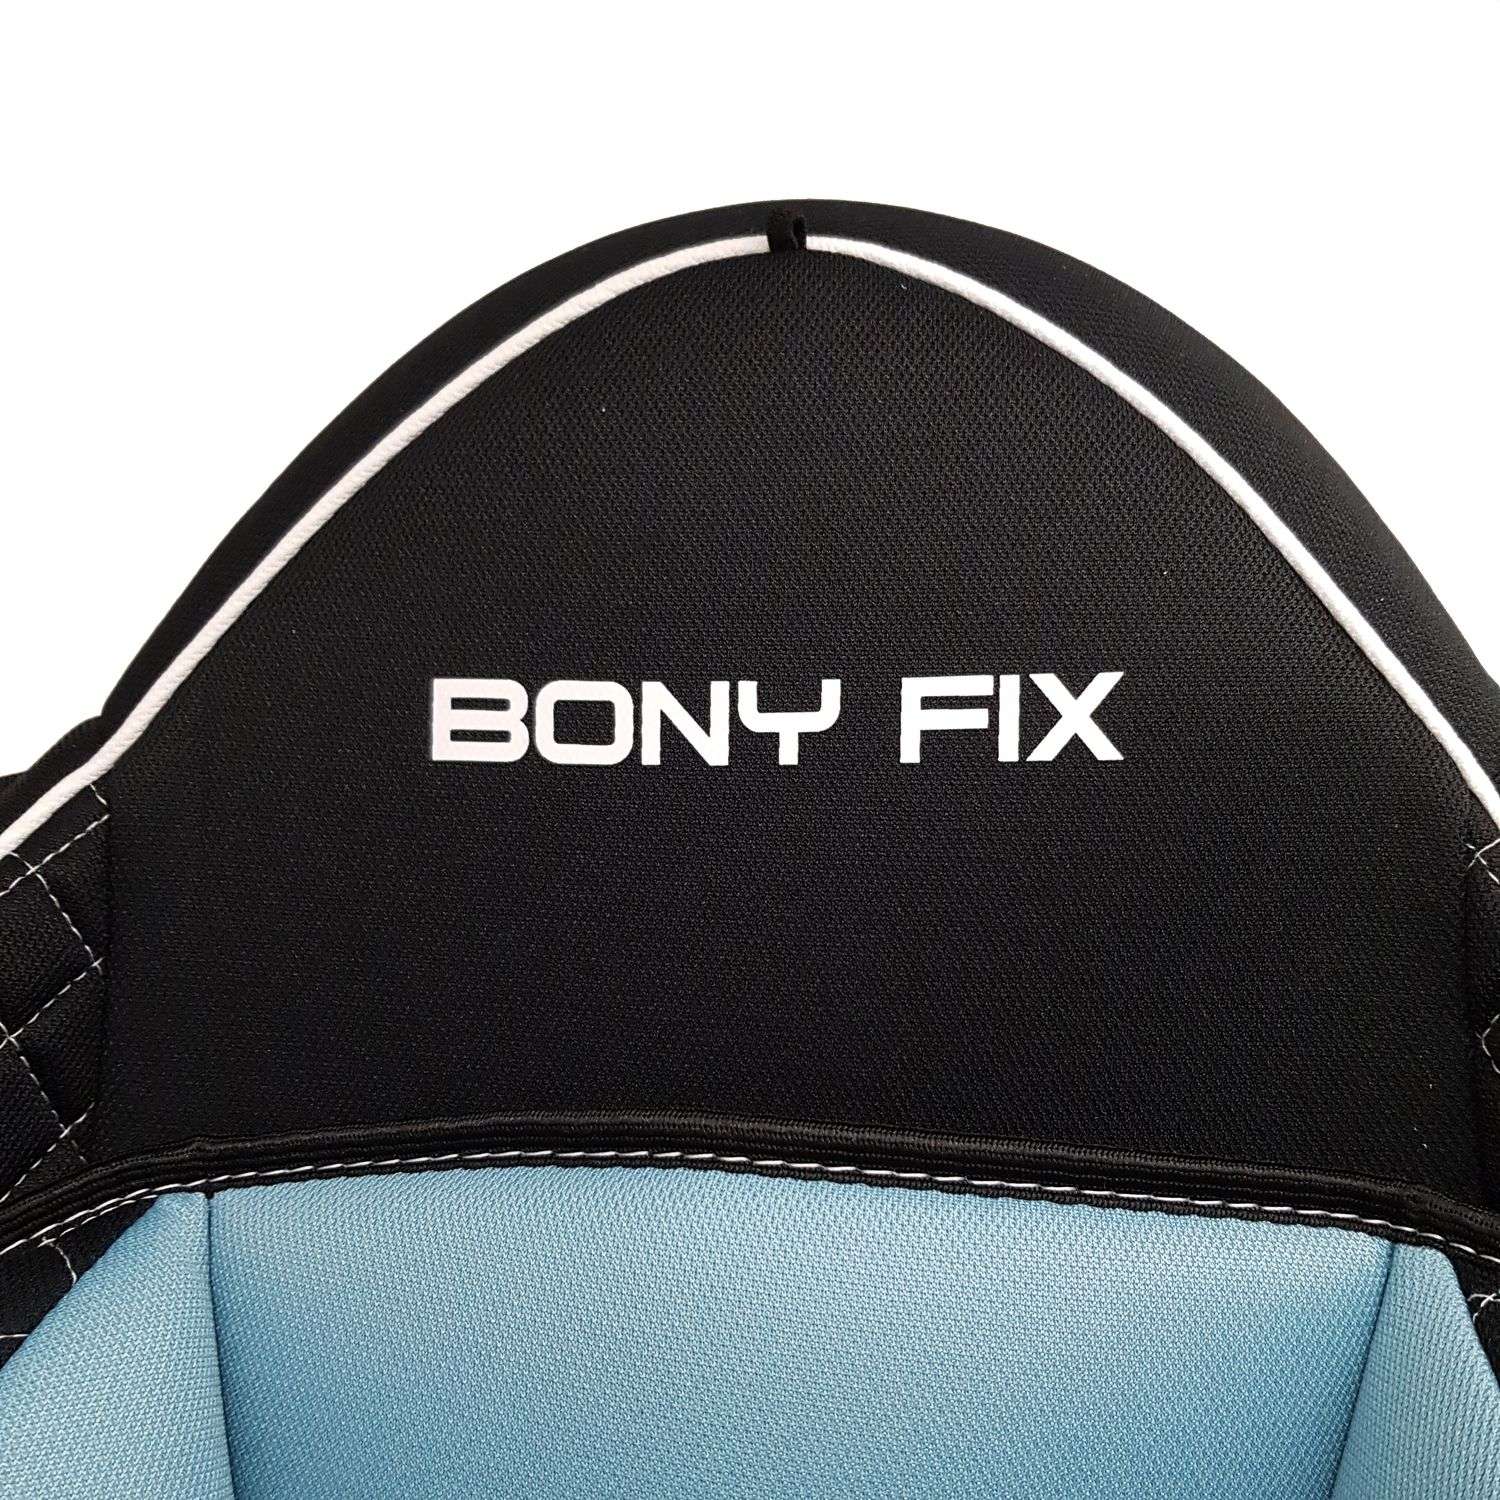 Автокресло Babyton Bony Fix I/II Turquoise - фото 10